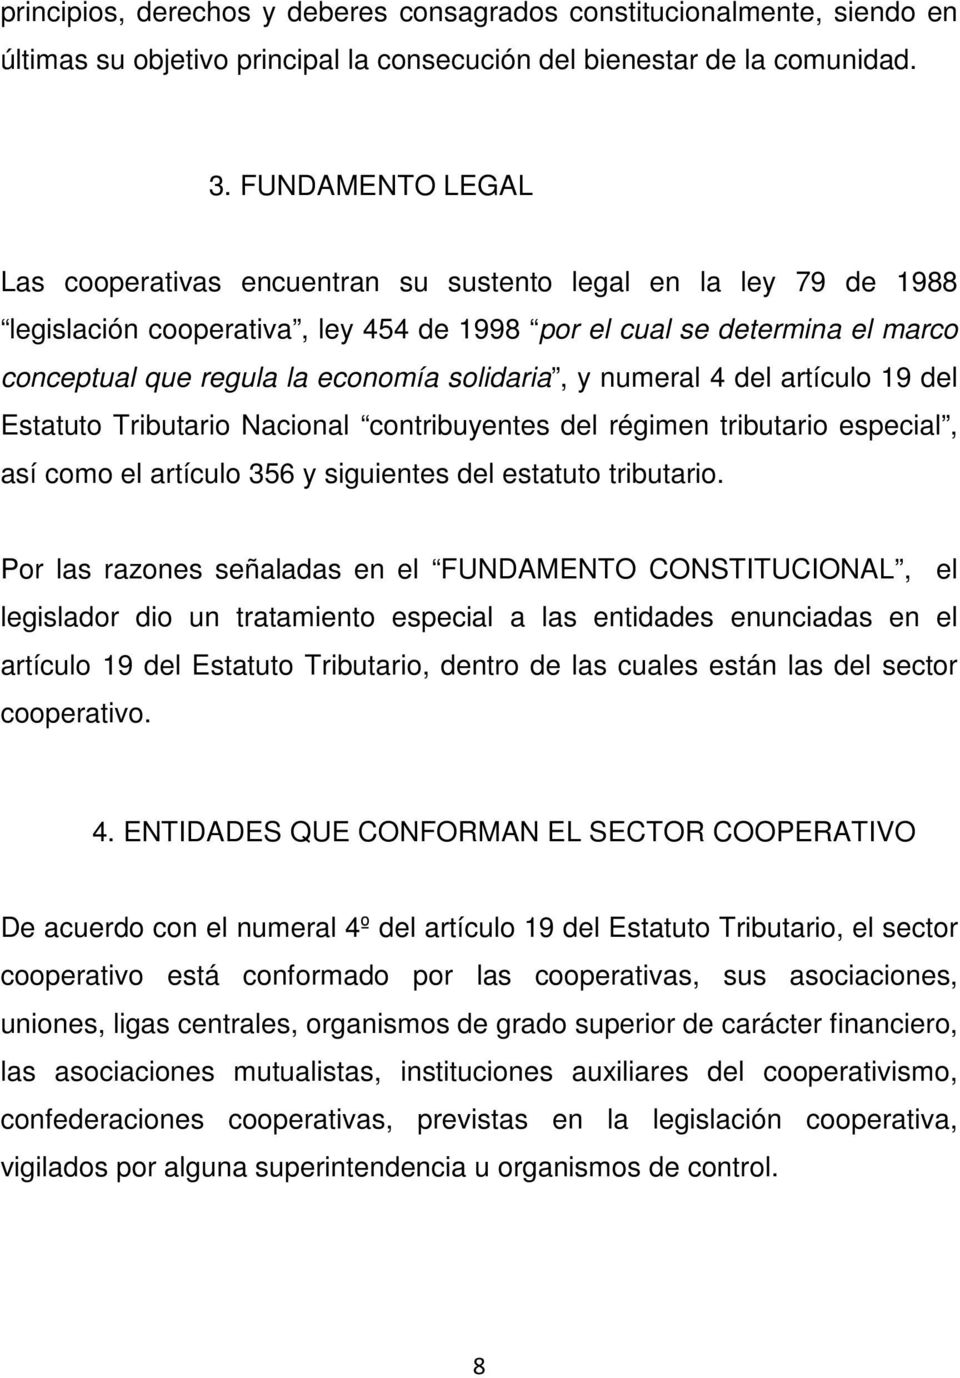 solidaria, y numeral 4 del artículo 19 del Estatuto Tributario Nacional contribuyentes del régimen tributario especial, así como el artículo 356 y siguientes del estatuto tributario.